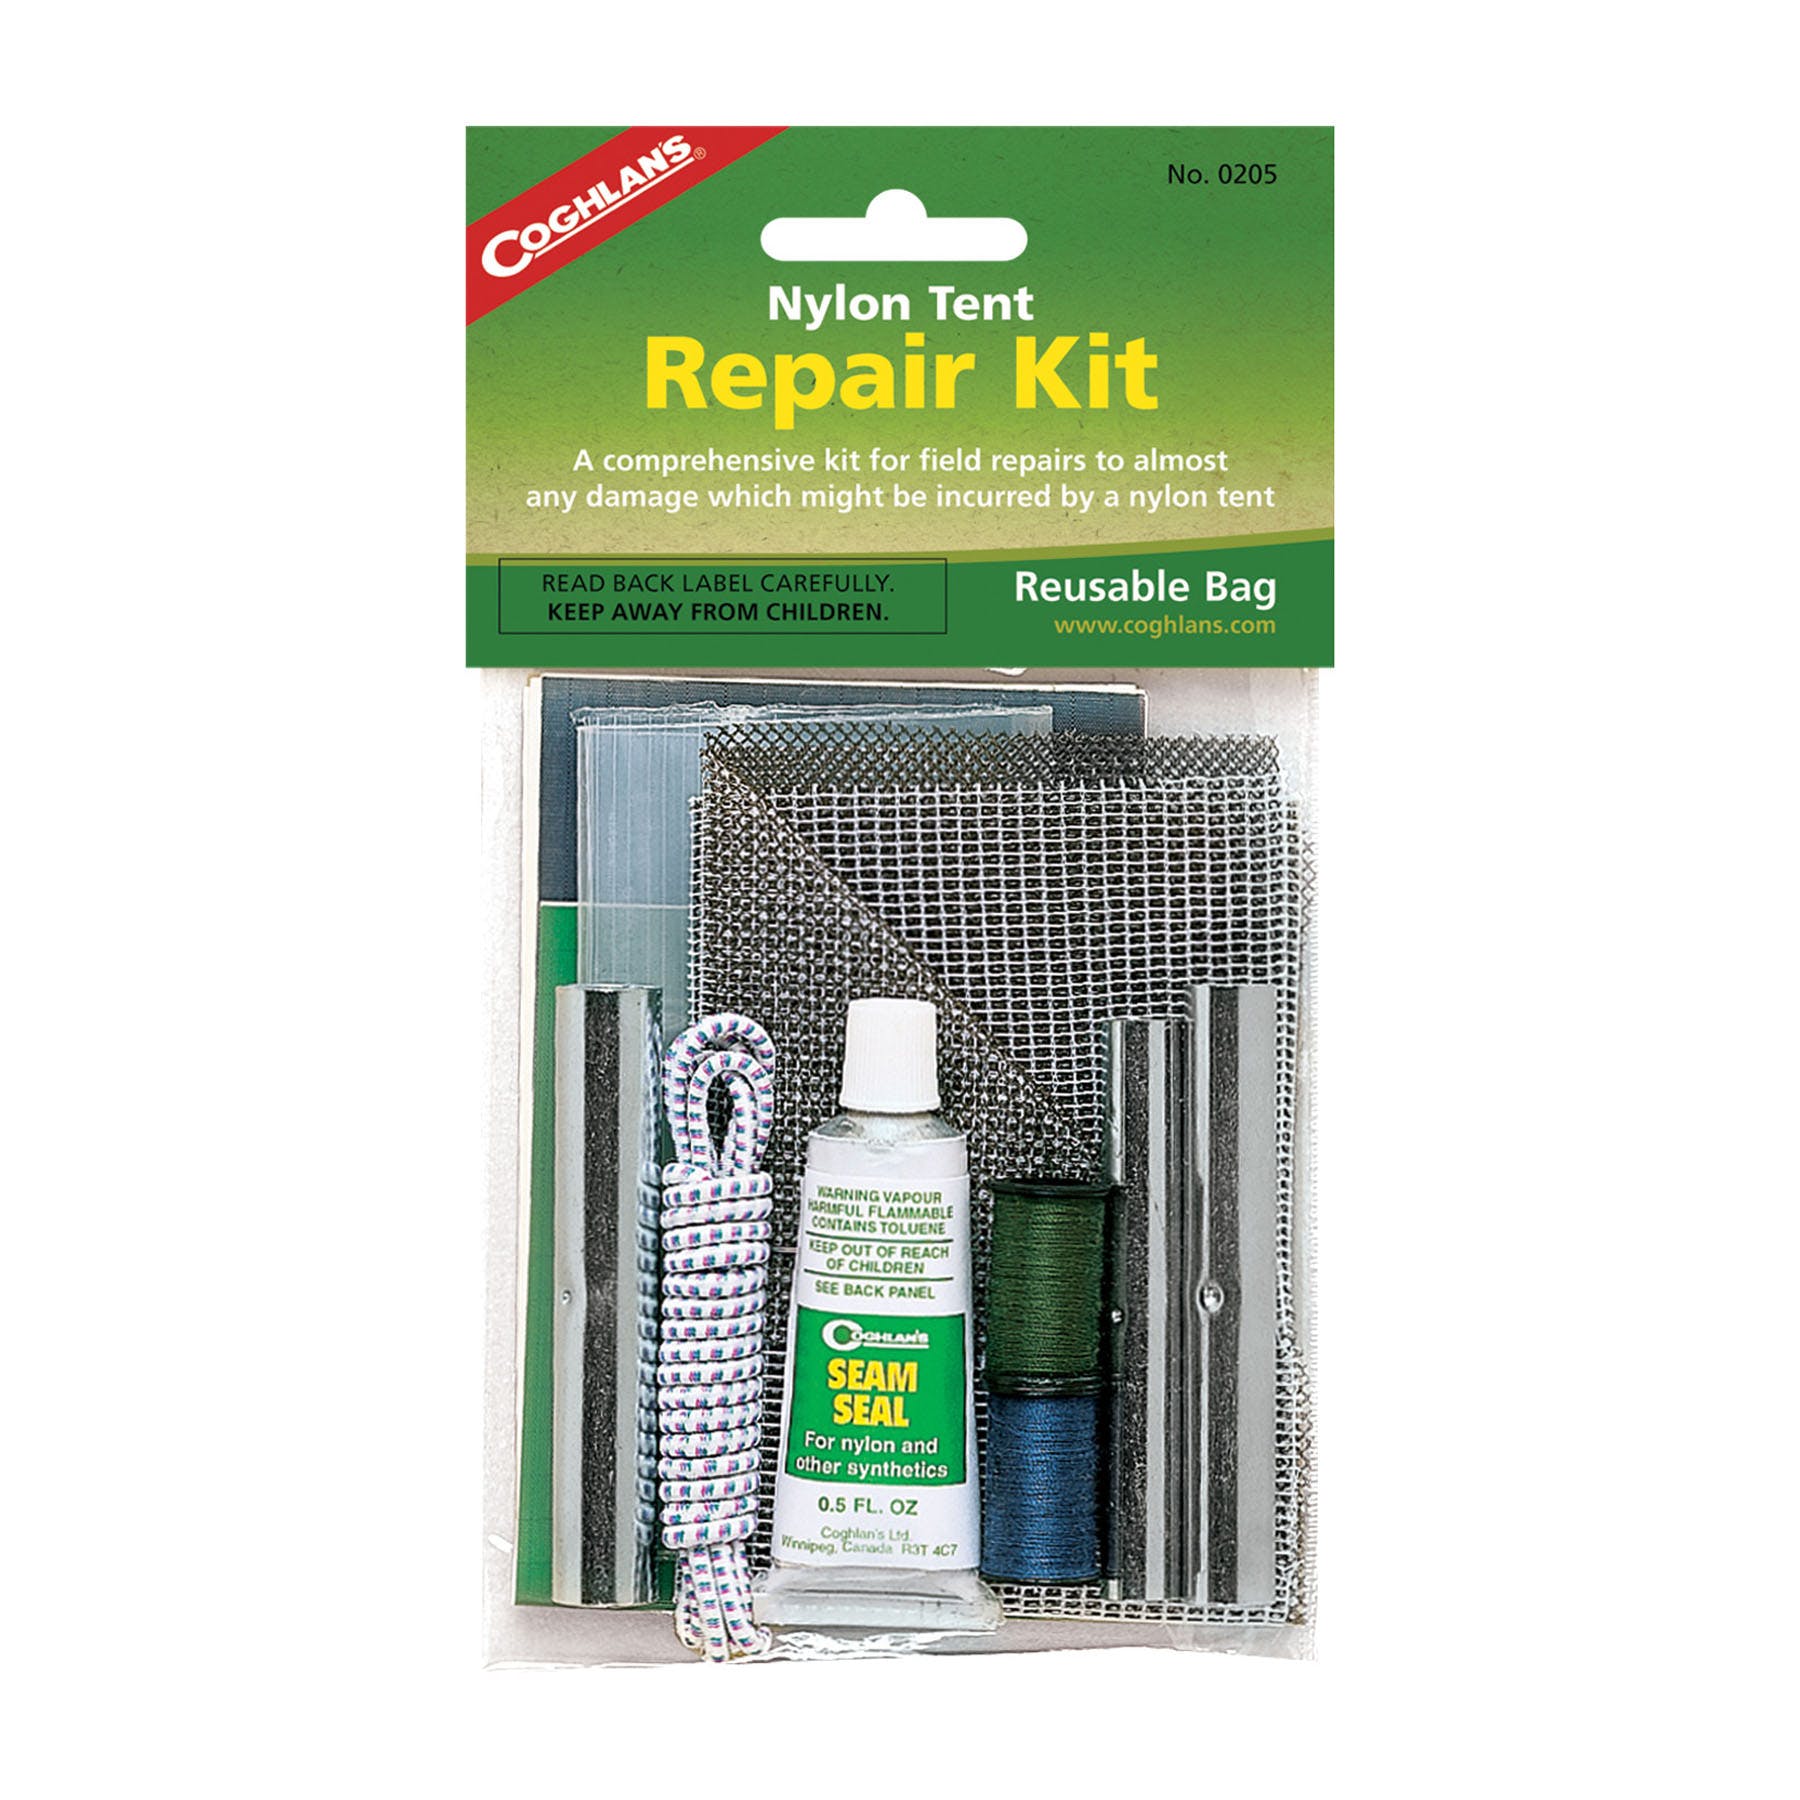 Coghlan's Repair Kit, Plastic or Rubber